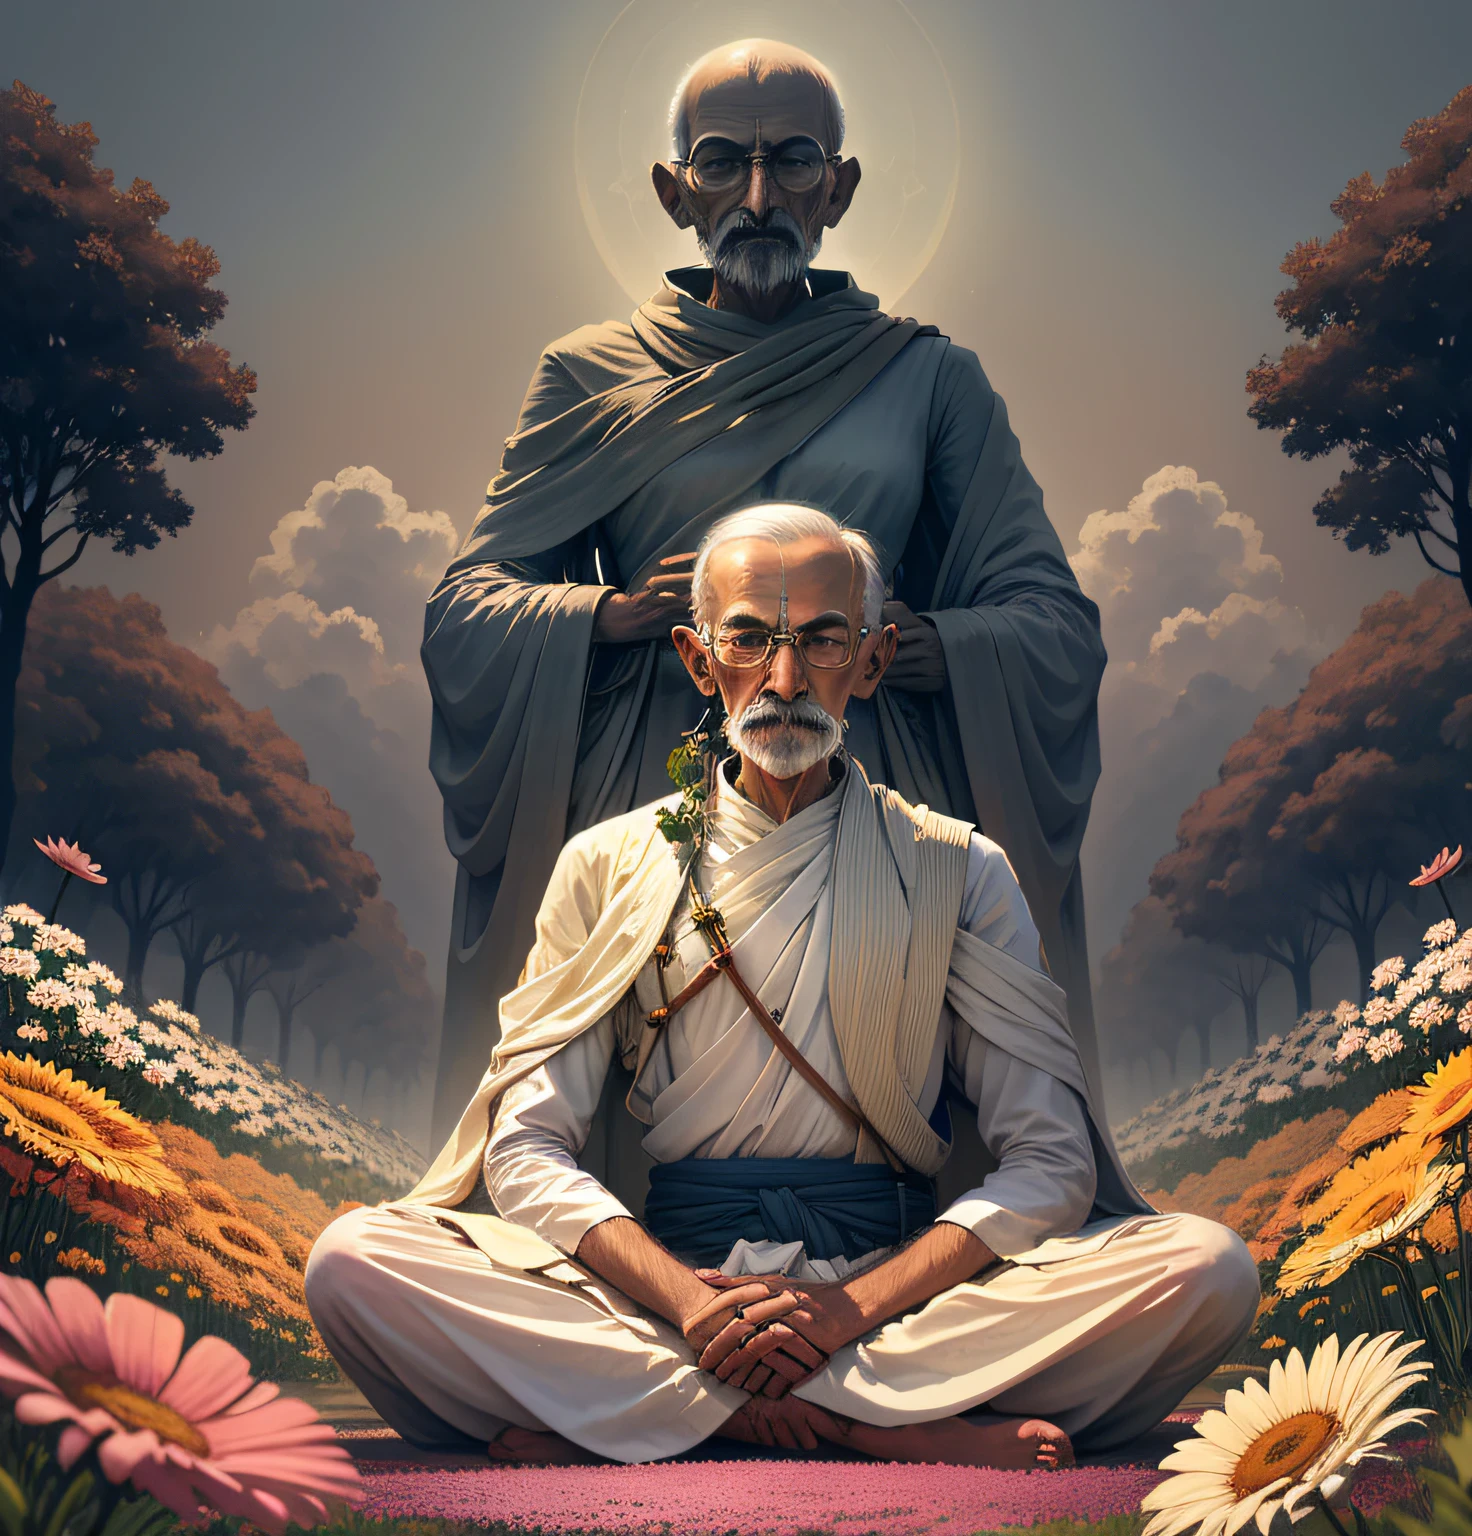 力強いメッセージを持つ平和的な男, マハトマ・ガンジーは鮮やかな花畑の中で堂々と立っている, 彼は目を閉じて瞑想し、真実への道を熟考した。 .